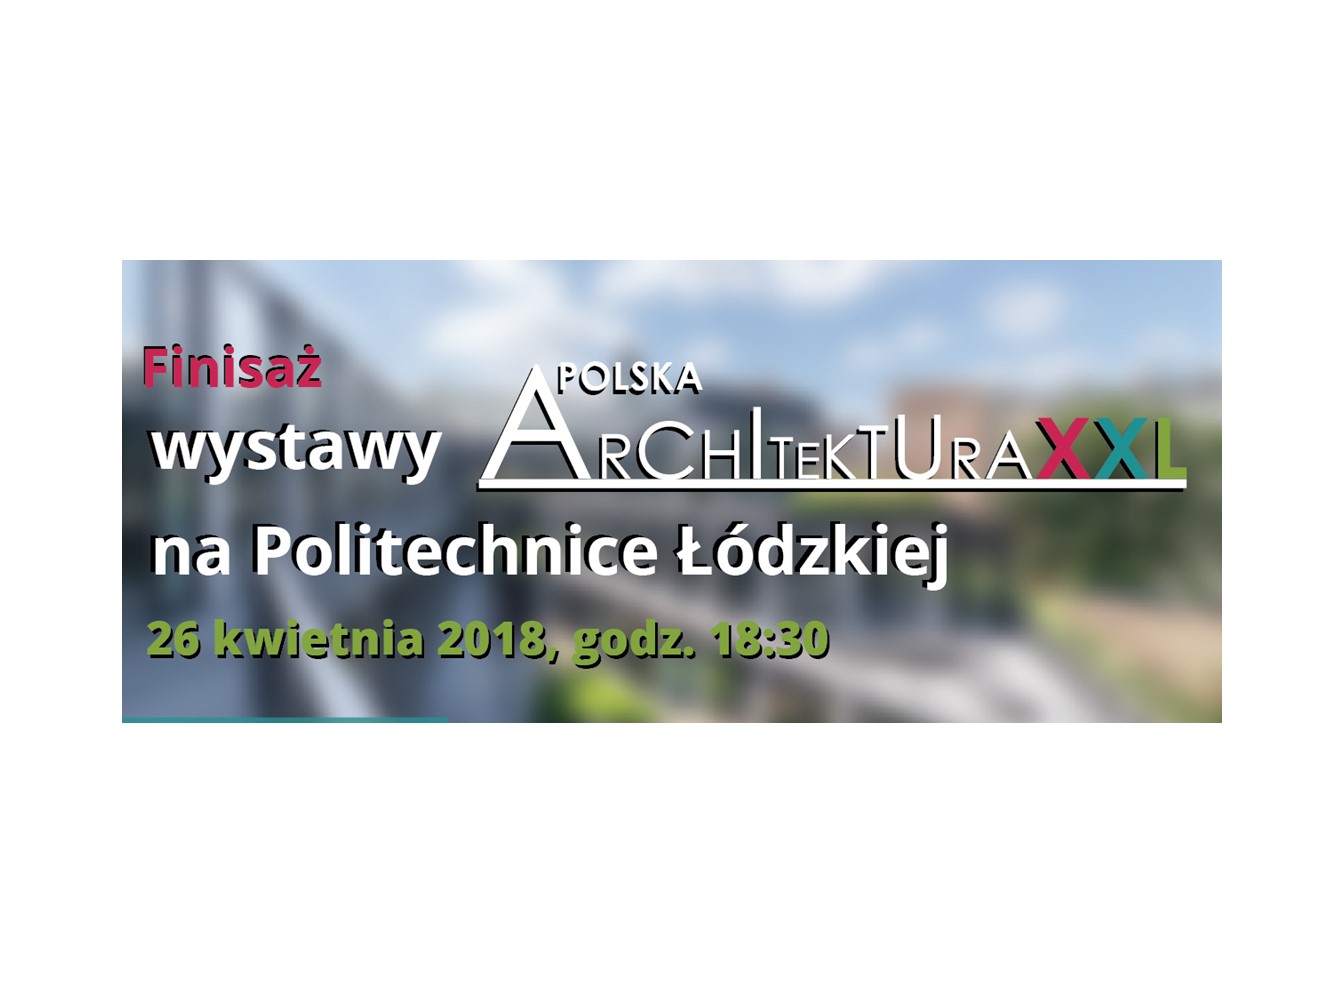 WYSTAWA POLSKA ARCHITEKTURA XXL 2017